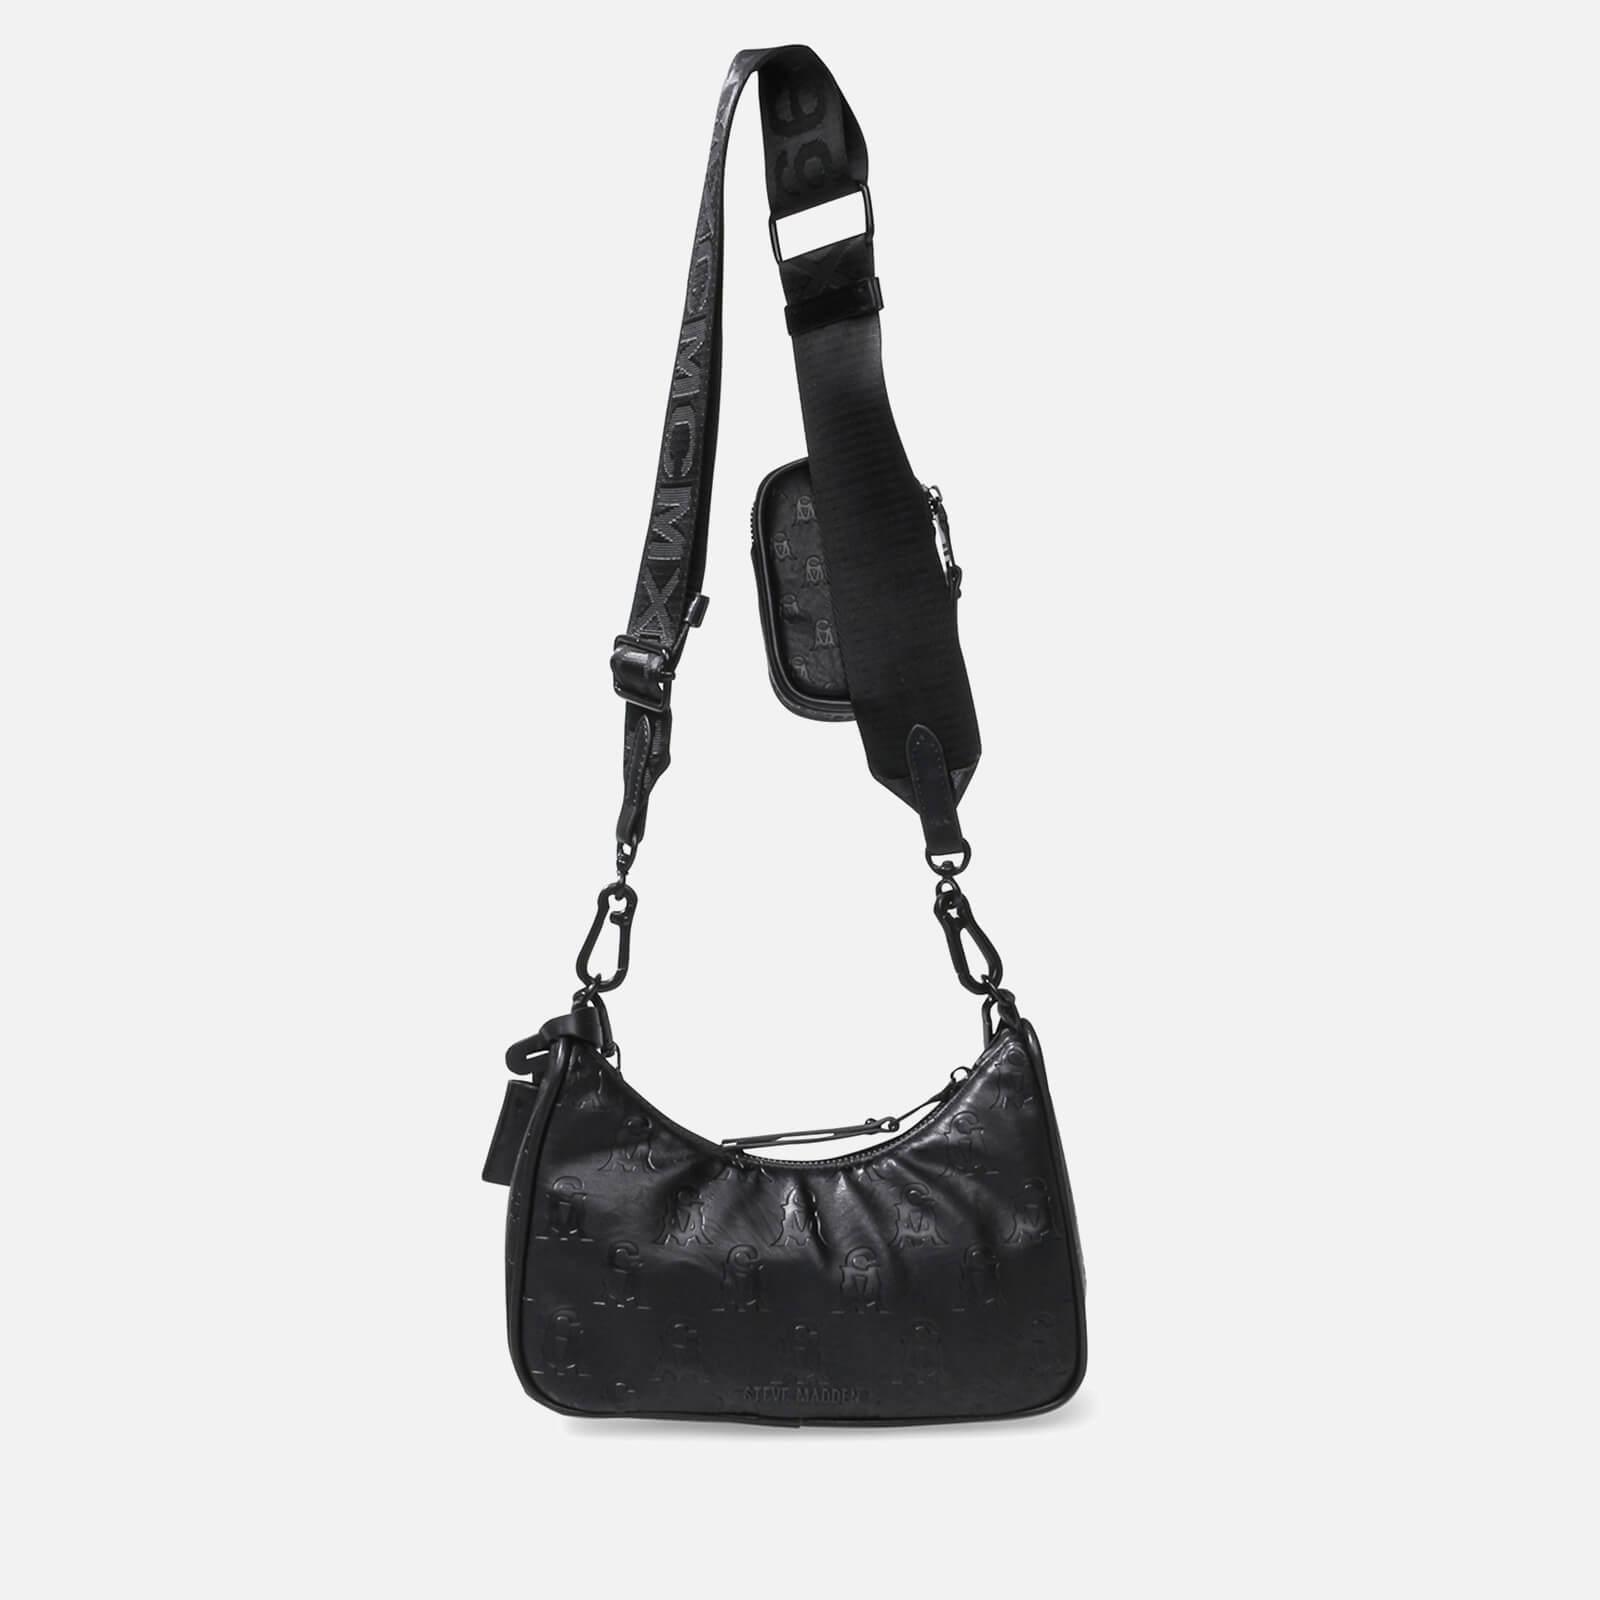 VITAL Bag Black Shoulder Bag  Black Shoulder Bag for Women